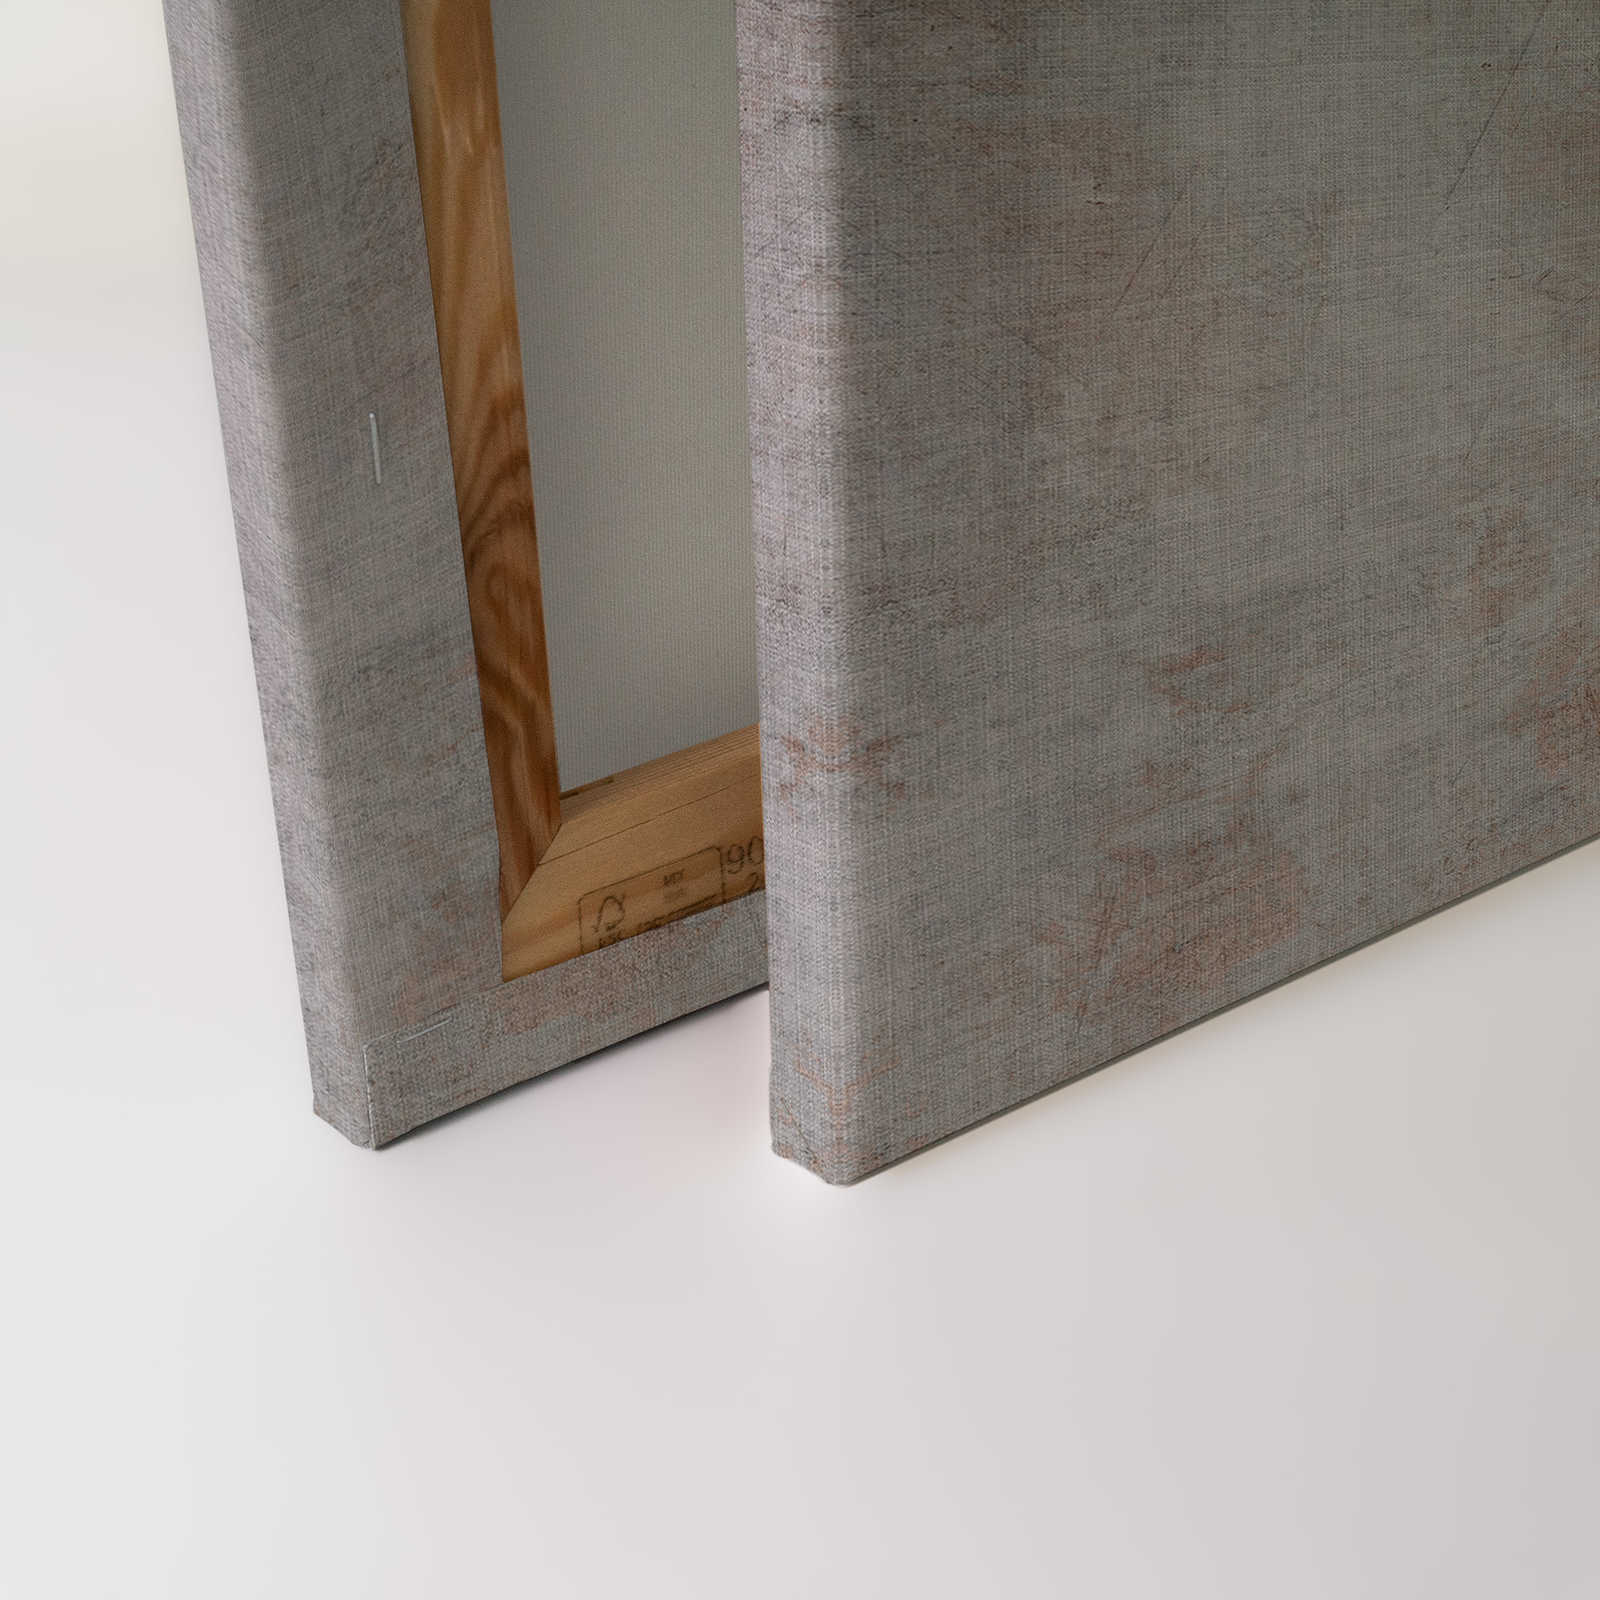             Big three 3 - Quadro su tela, effetto cemento con cervo in struttura di lino naturale - 0,90 m x 0,60 m
        